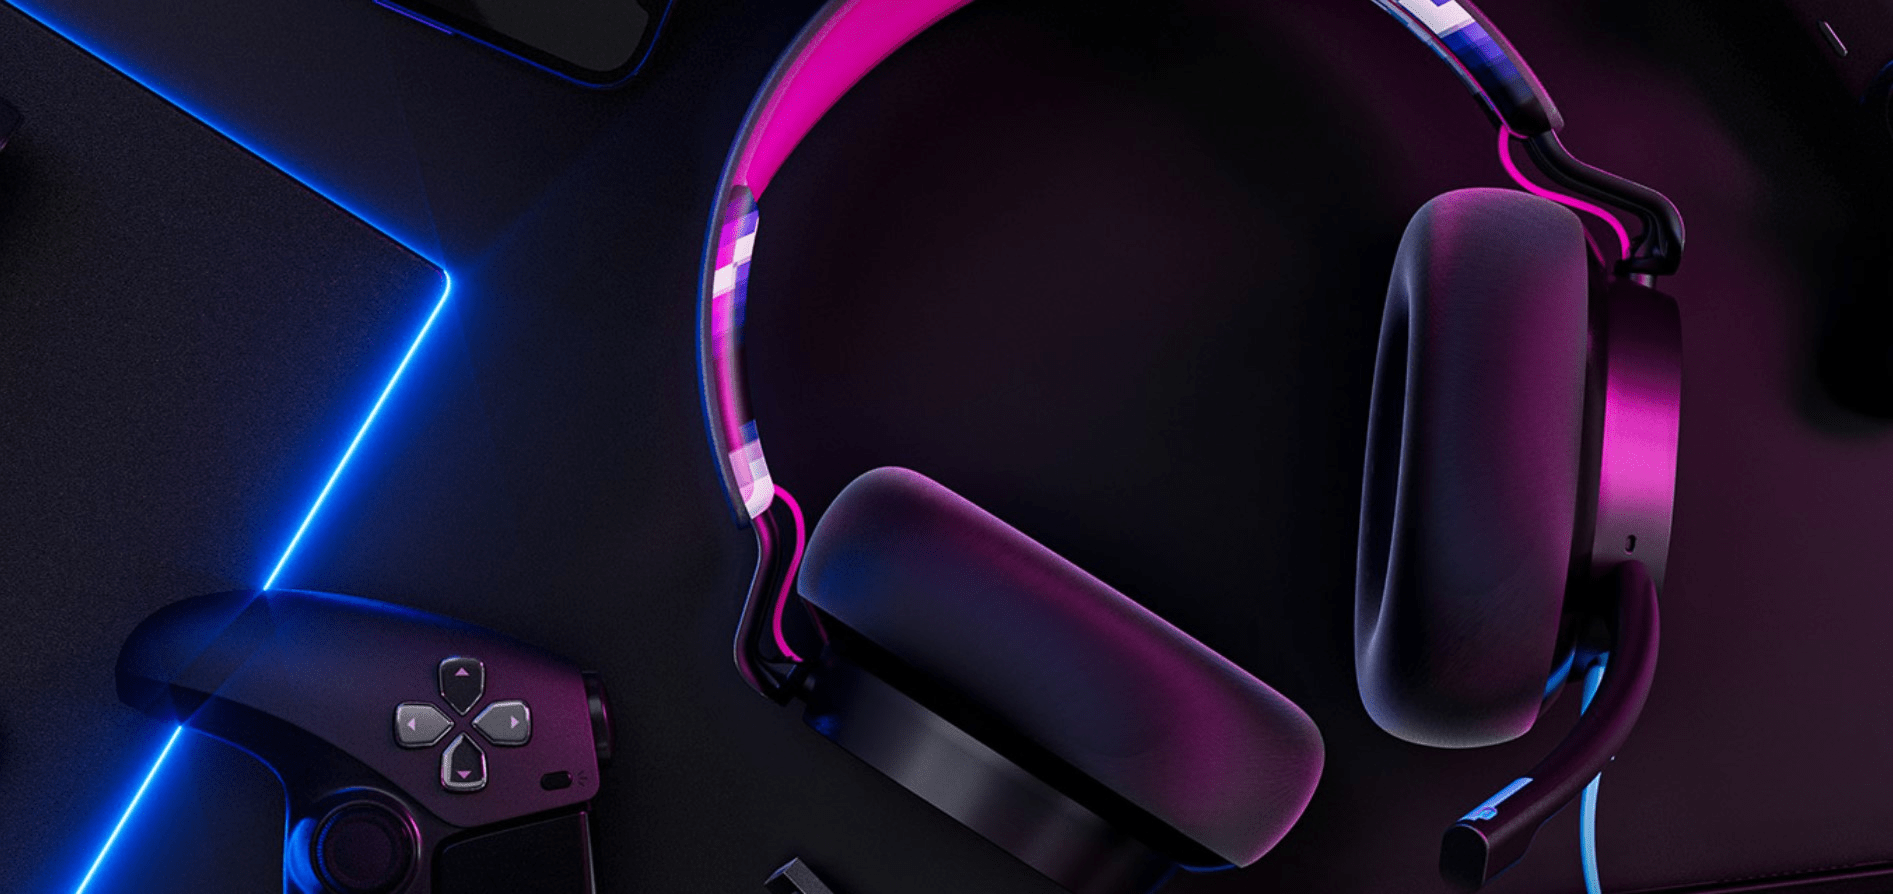  moderní kabelová sluchátka skullcandy Slyr Pro Wired krásný zvuk skvělá pro hru her plug play zapojení vysoce pohodlná